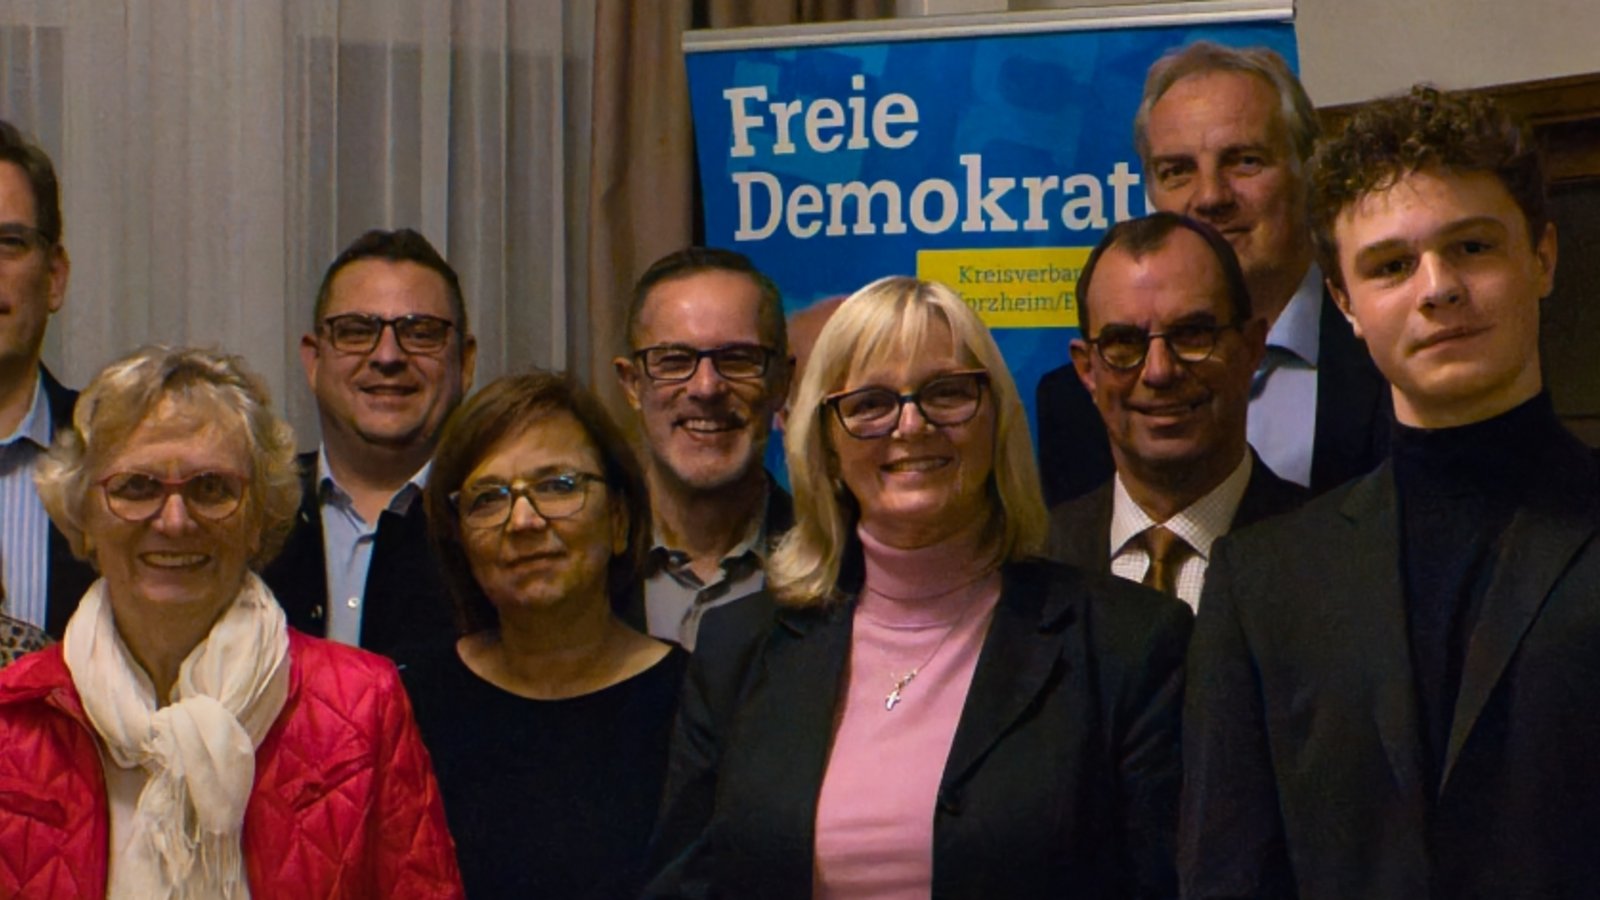 Die FDP hofft im Enzkreis gemeinsam mit dem FDP-Kreisvorsitzenden Dr. Hans-Ulrich Rülke (3. v.r.) und dem FDP-Europakandidaten Johannes Baumbast (ganz rechts) auf ein starkes Ergebnis bei der Kreistagswahl. Foto: p